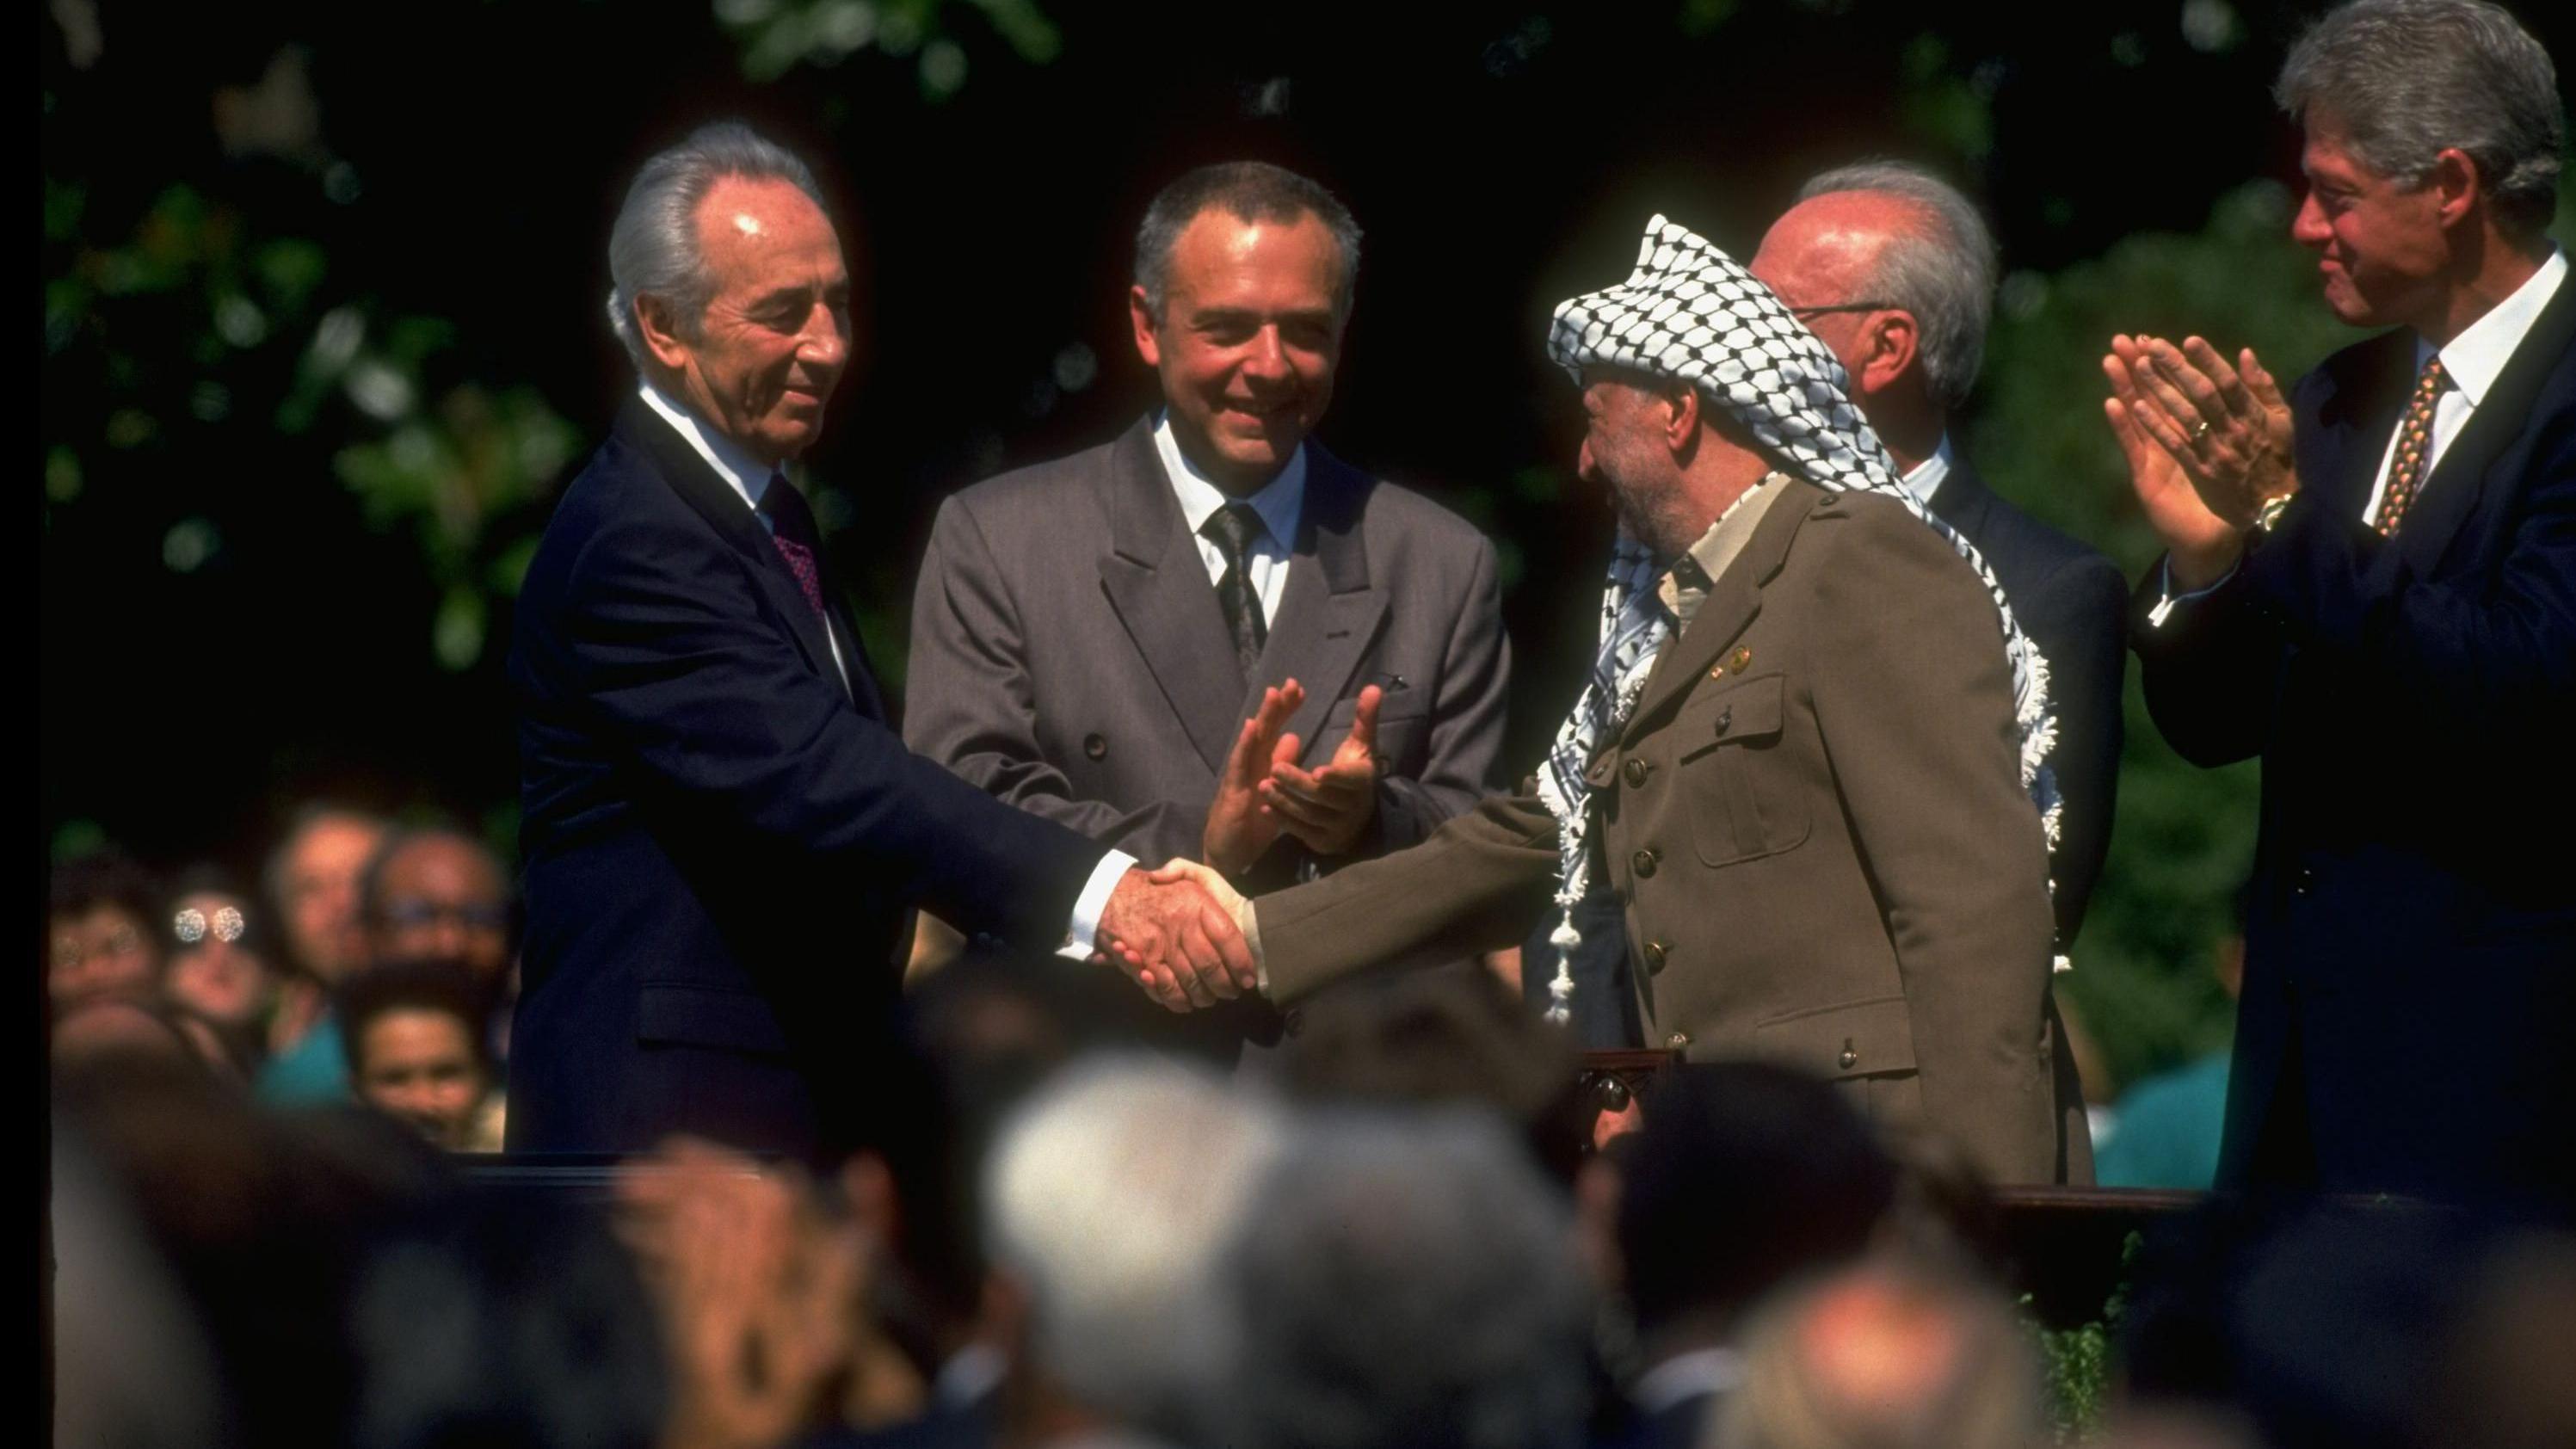 رئيس منظمة التحرير الفلسطينية ياسر عرفات (على اليمين) يصافح وزير الخارجية الإسرائيلي شيمون بيريز (على اليسار) خلال توقيع اتفاقية أوسلو.